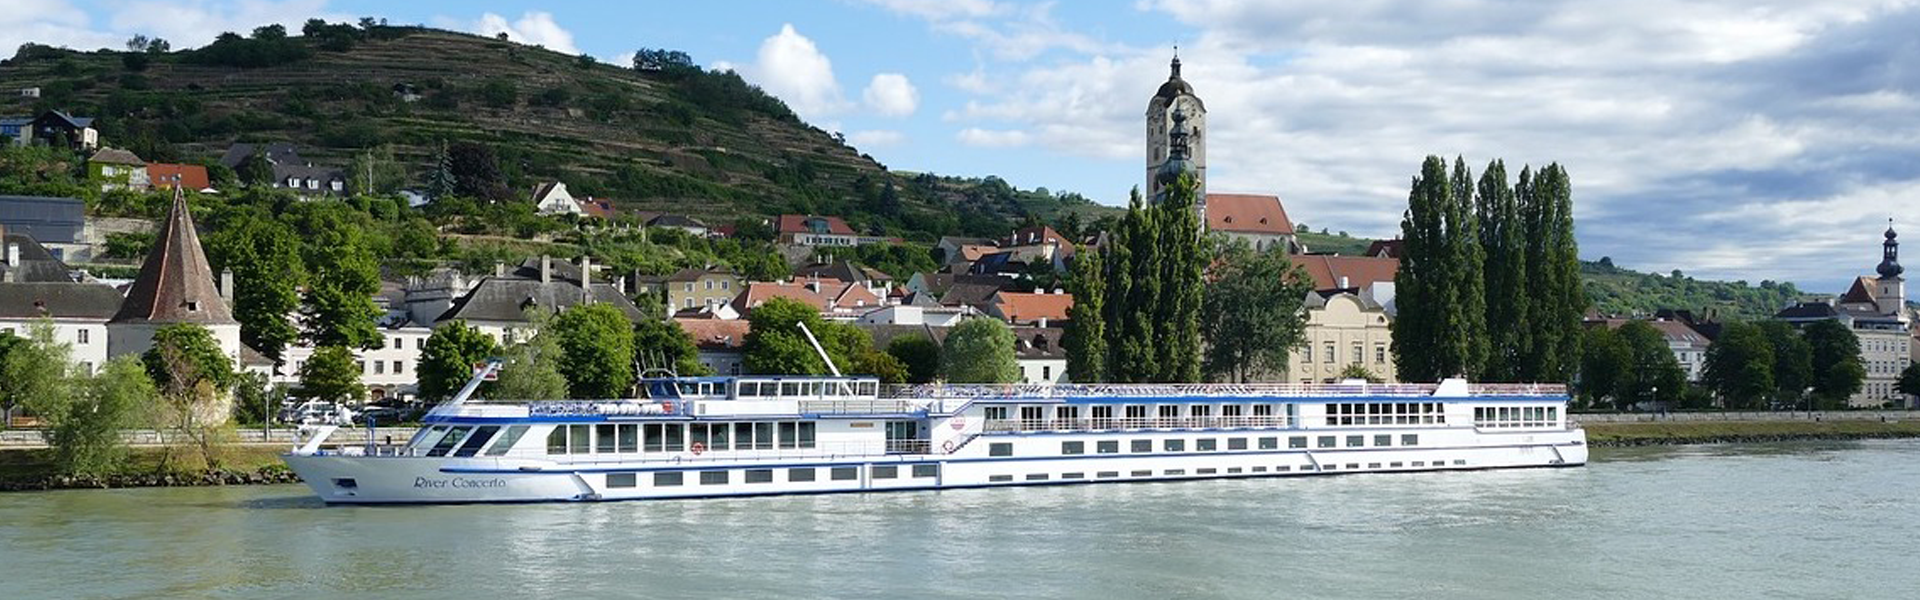 Crociere fluviali sul Danubio